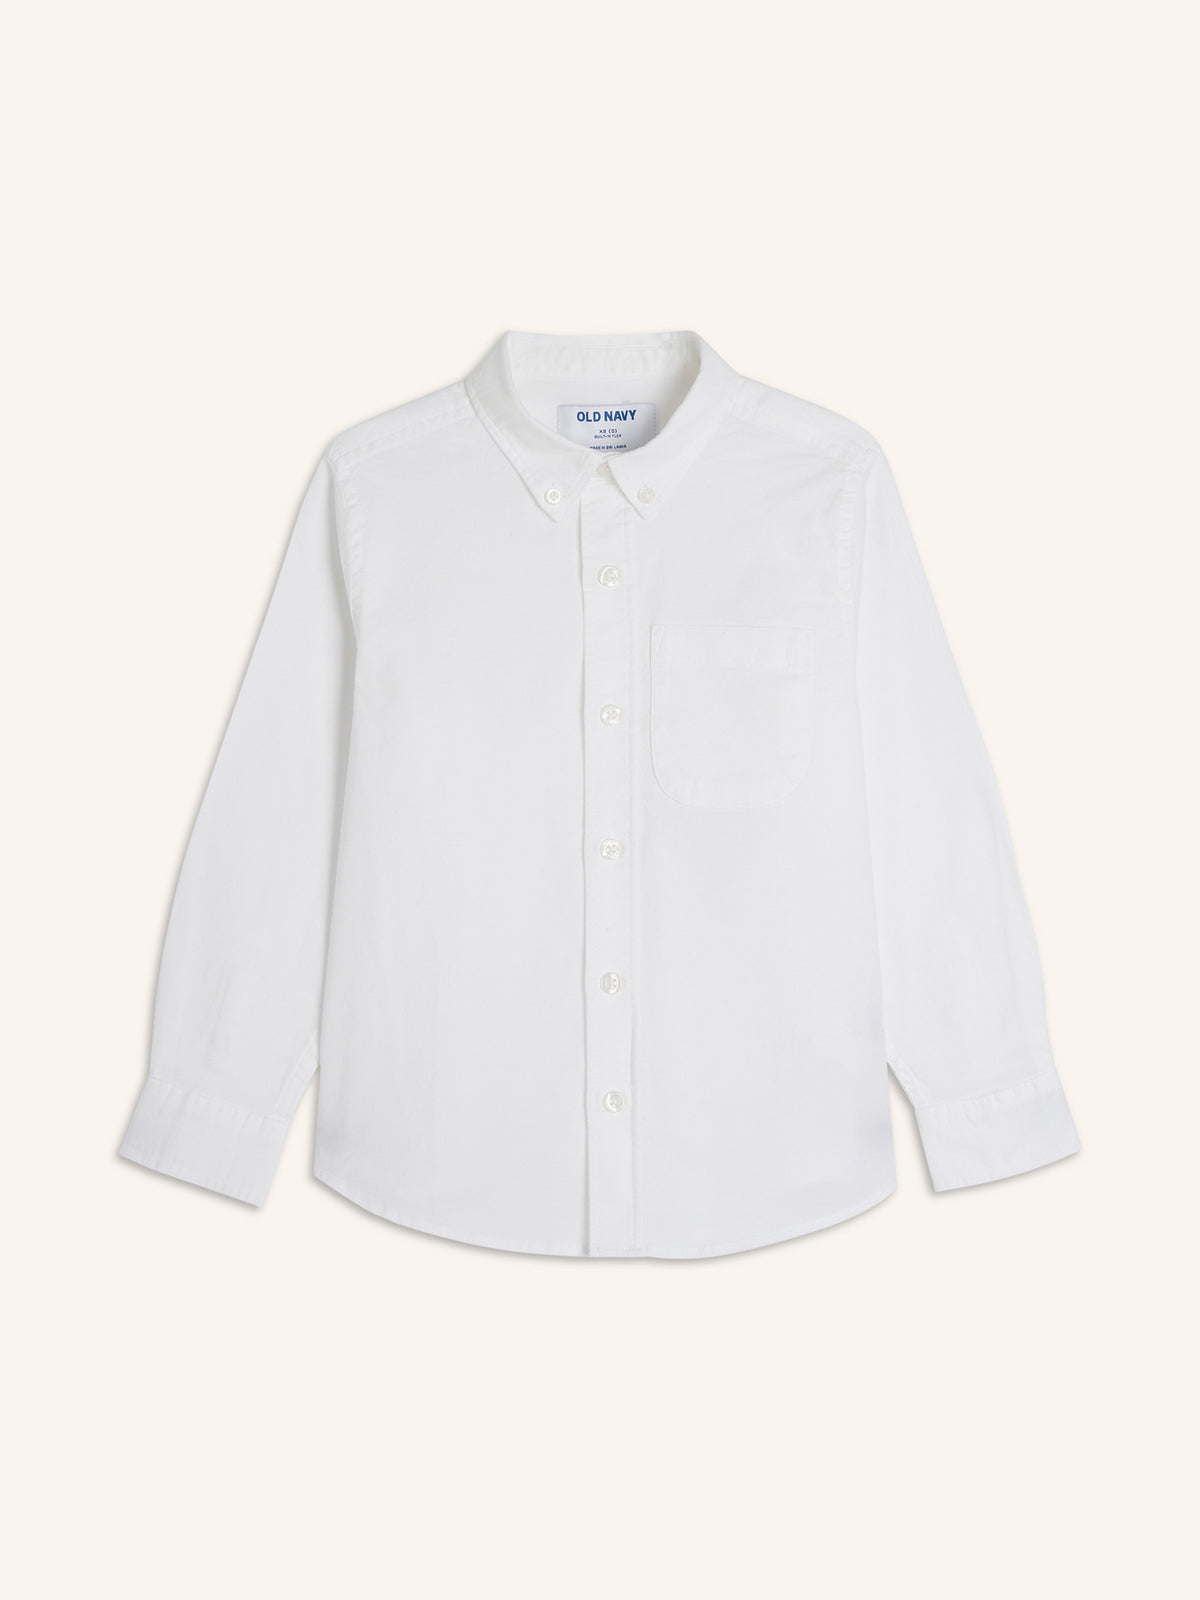 Lightweight Built-In Flex Oxford Uniform Shirt for Boys